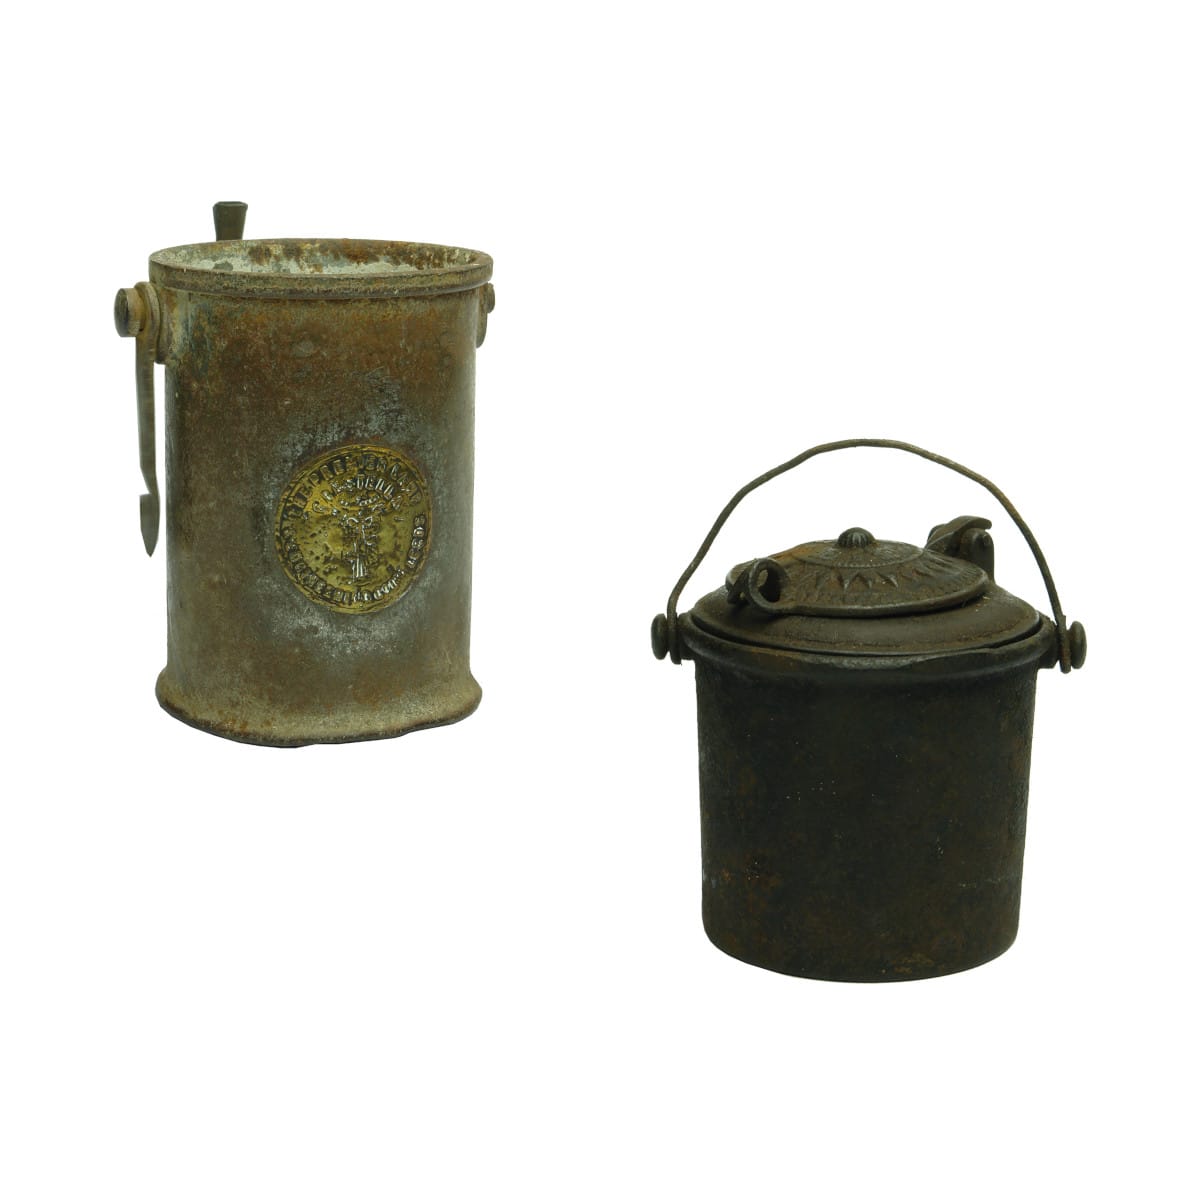 2 Cast Iron Pots: The Premier Lamp Crestella and a 2 part sample pot E, F & C.